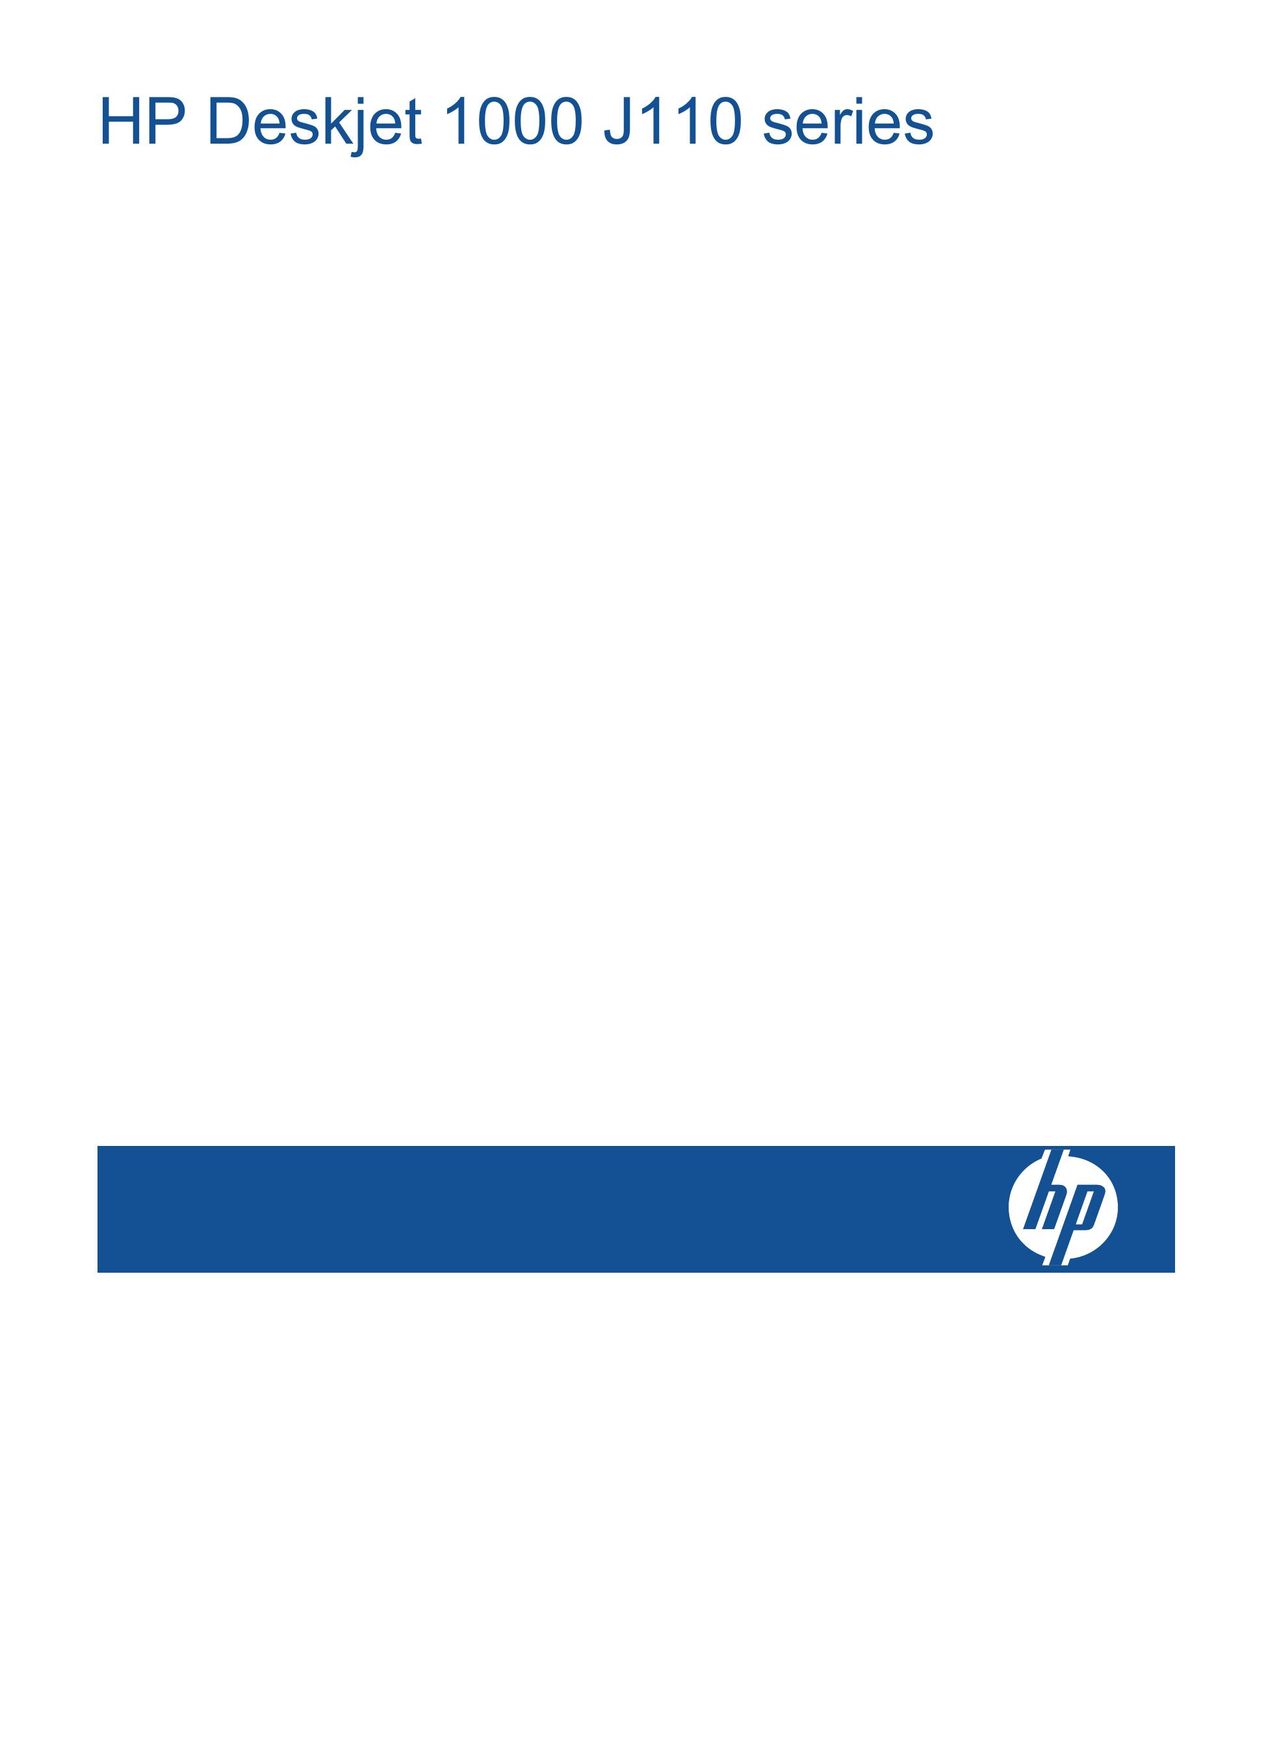 HP (Hewlett-Packard) 1000 Printer User Manual